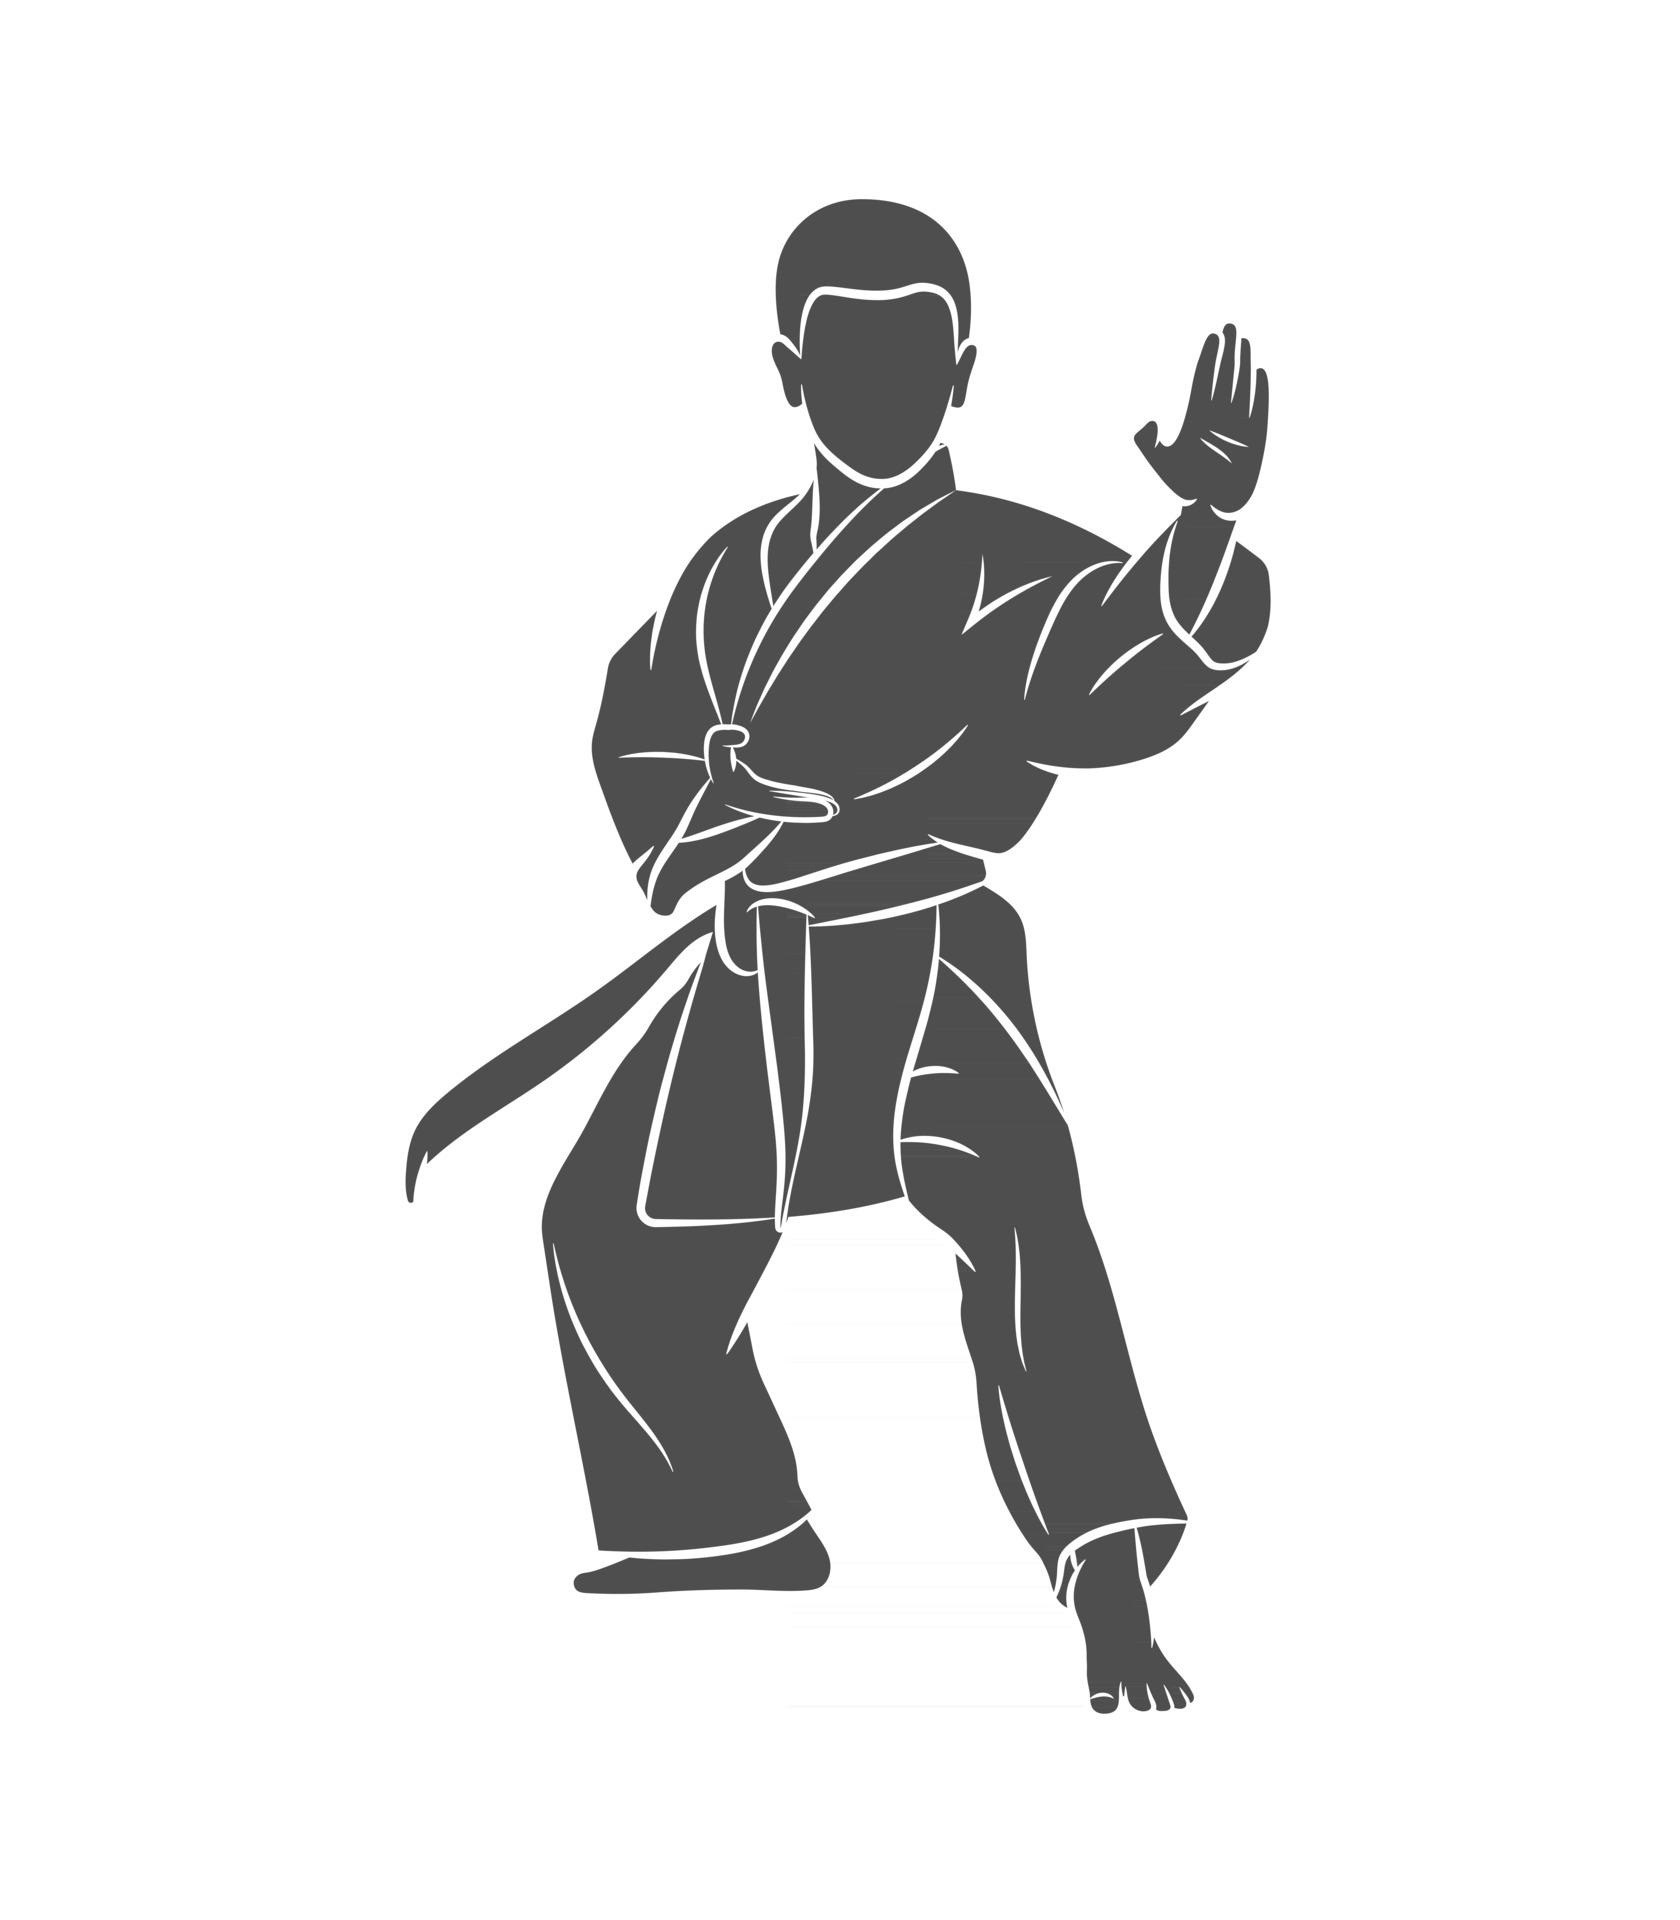 Võ thuật Karate không chỉ là sự mạnh mẽ mà còn cần đến sự luyện tập siêng năng và kiên trì. Hãy cùng xem những hình ảnh về luyện tập Karate để hiểu rõ hơn về tầm quan trọng của sự cống hiến và nỗ lực.